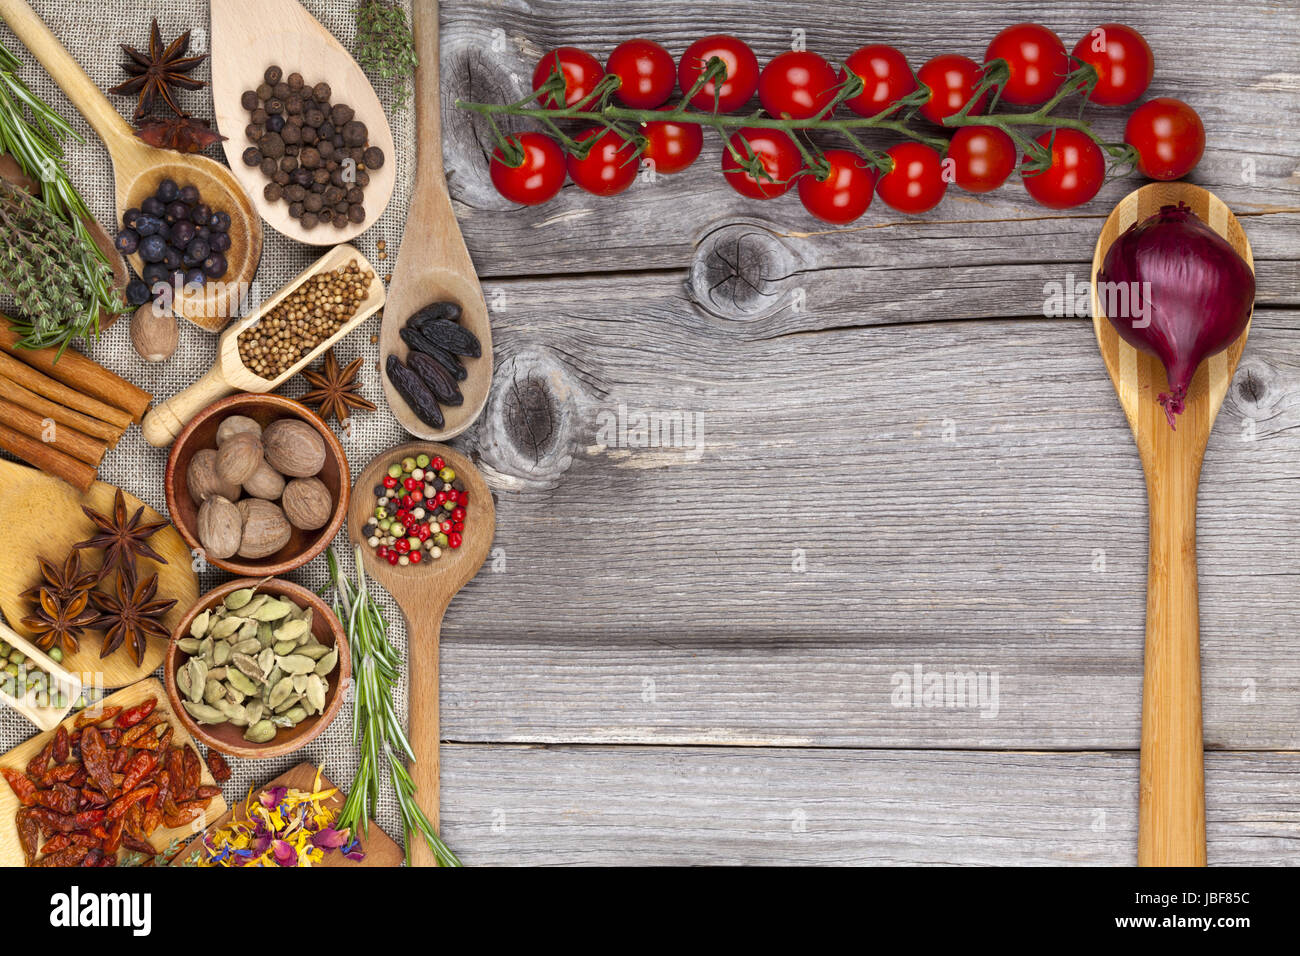 Speisekarte mit Kochlöffel, Tomaten und Gewürzen Stock Photo